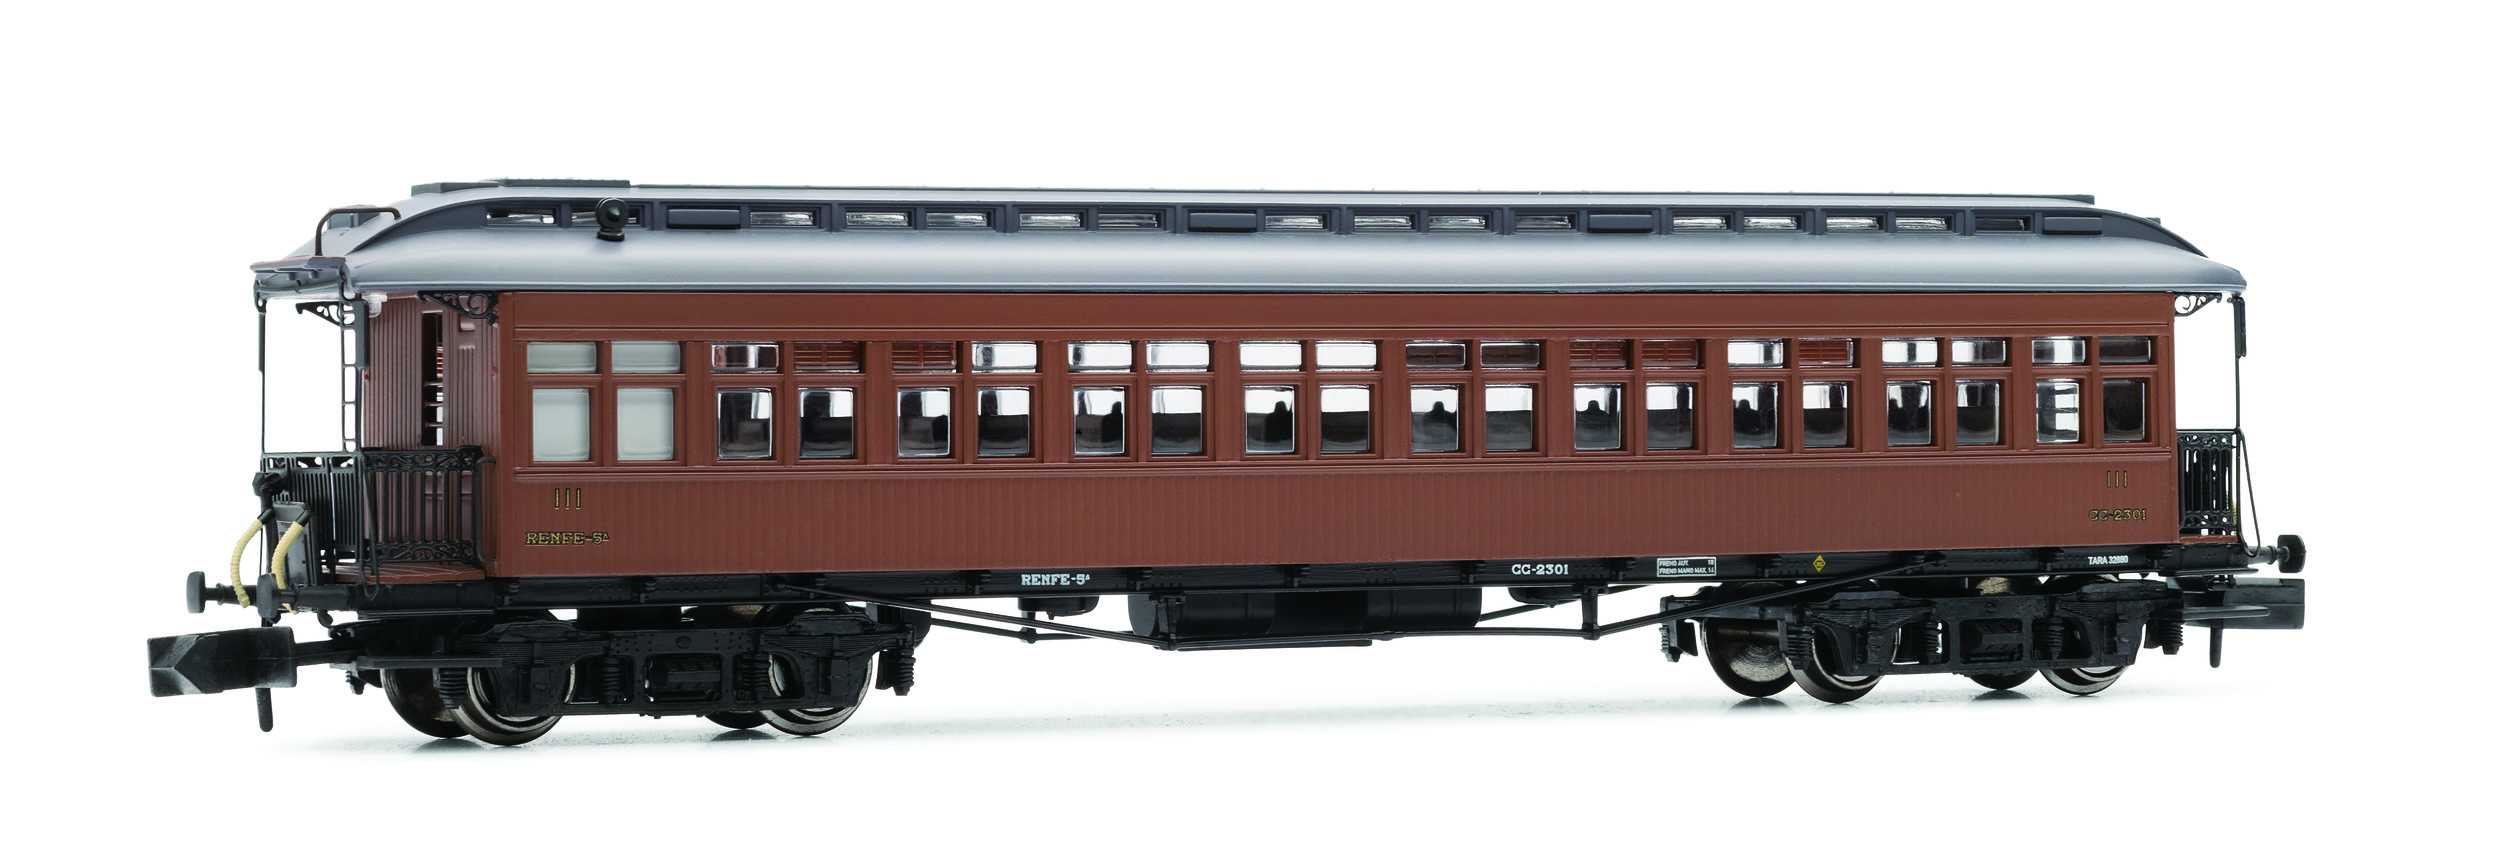 Trains miniatures : locomotives et autorail - Passager COSTA, 3e class